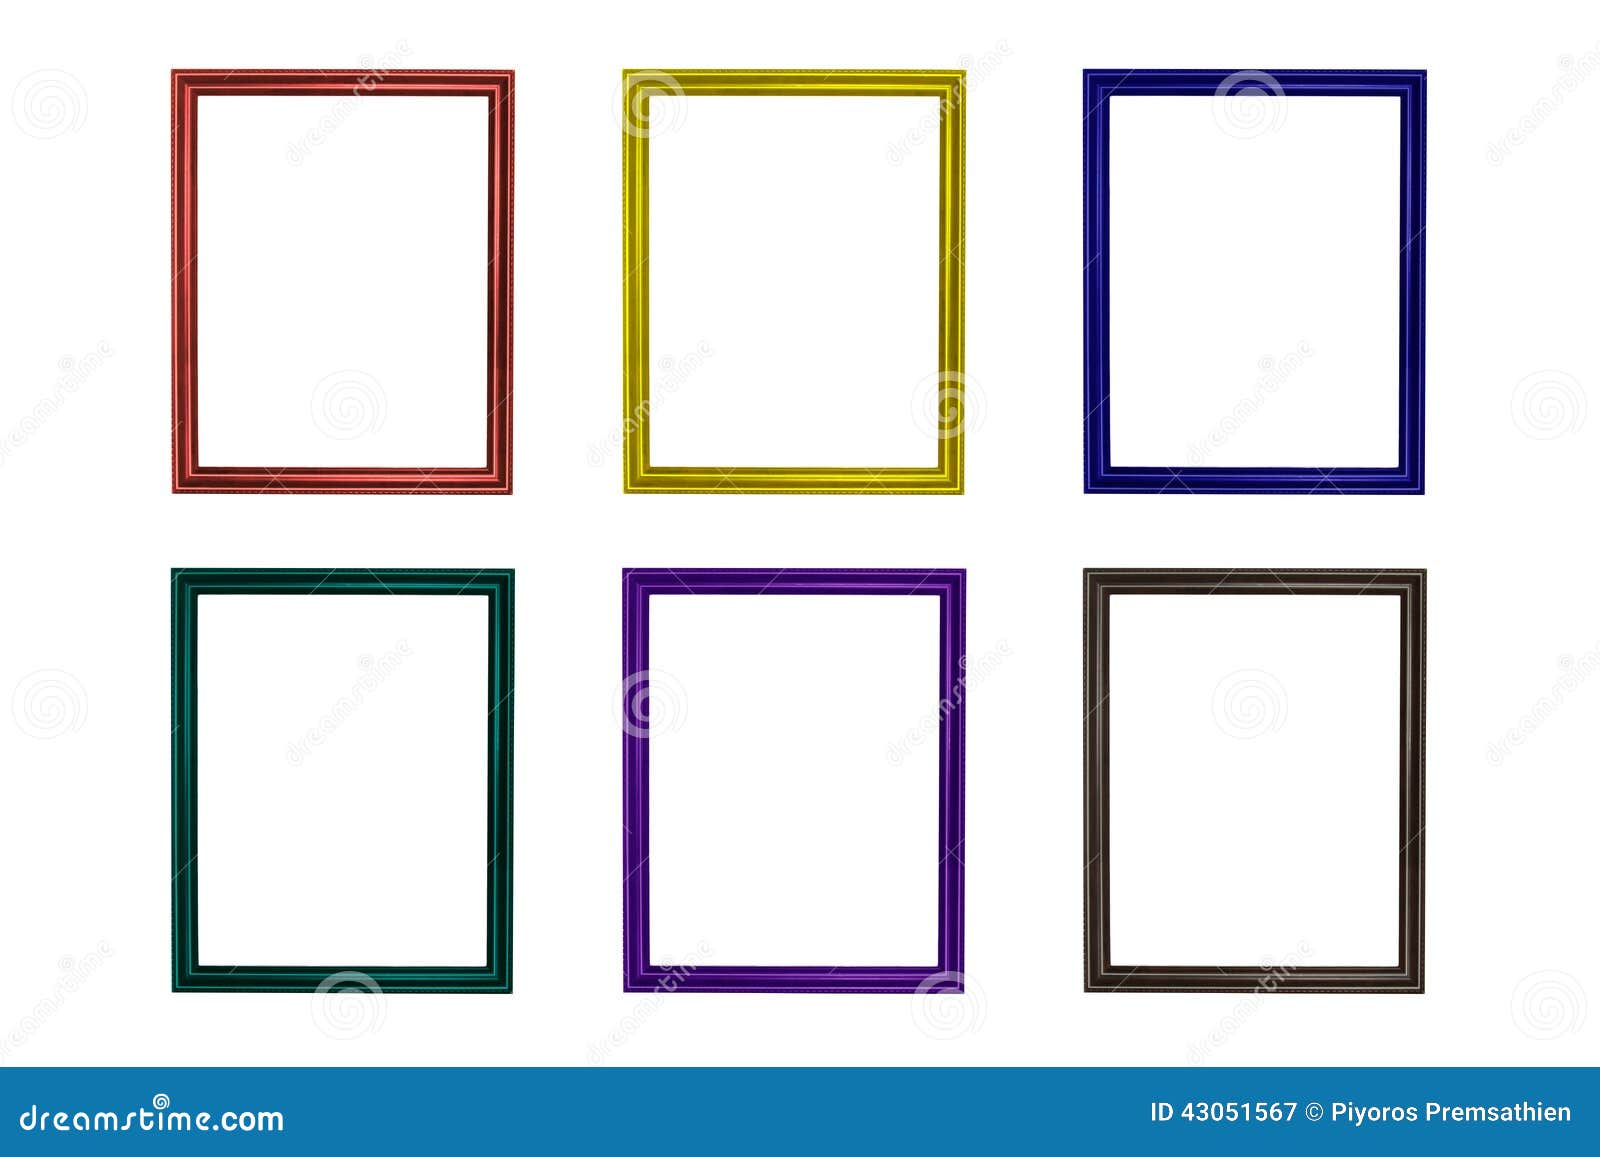 set of colorful wooden frames